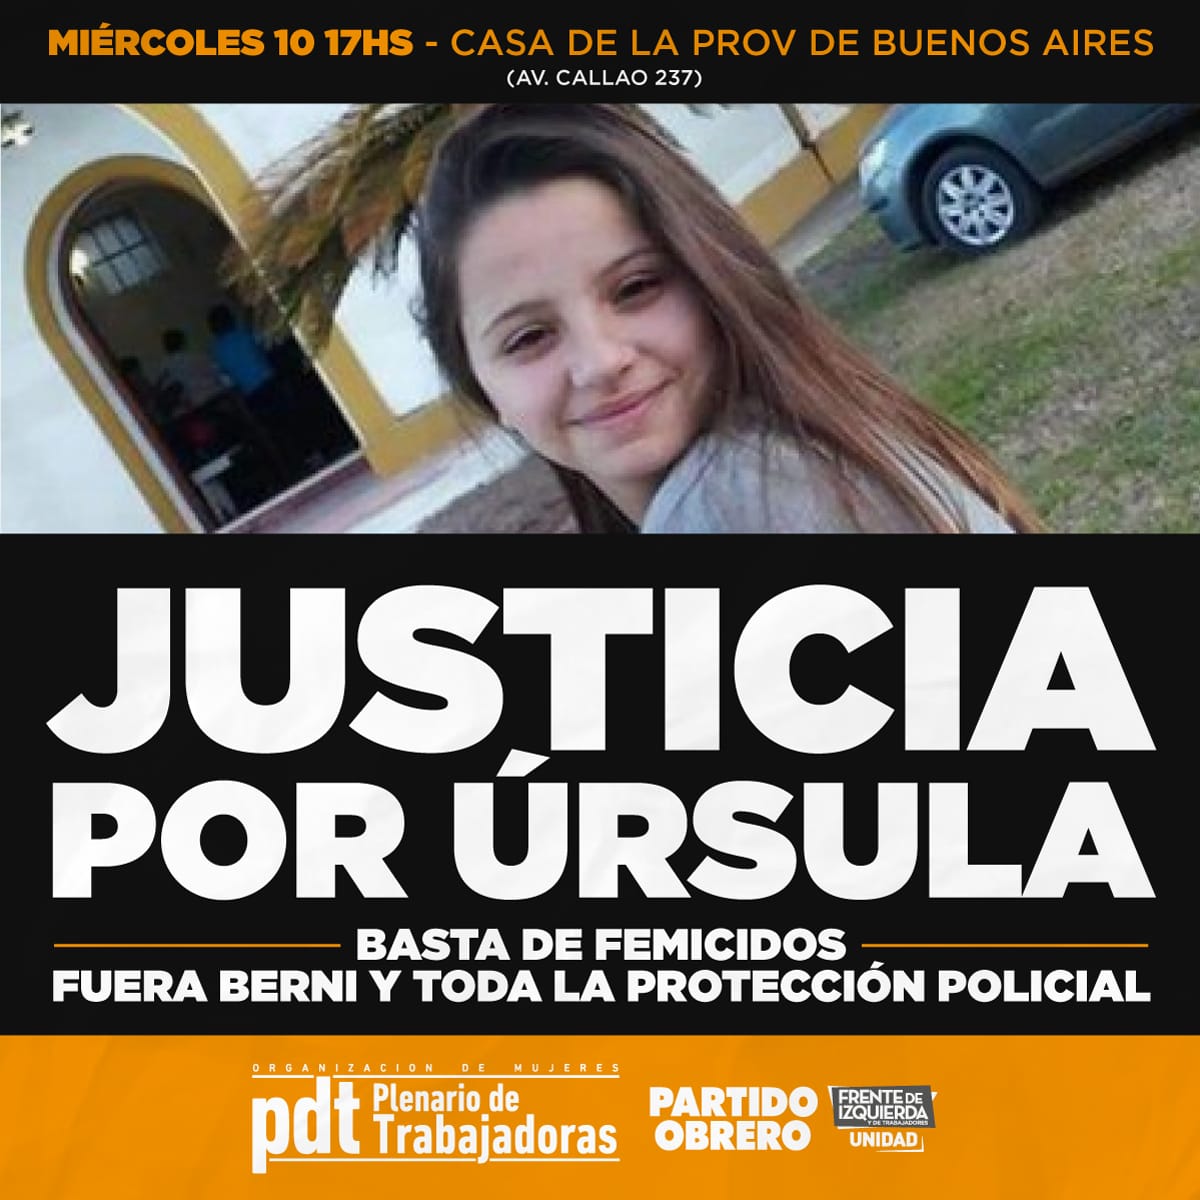 Justicia por Úrsula: 17h, concentración frente a la casa de la Provincia de Buenos Aires